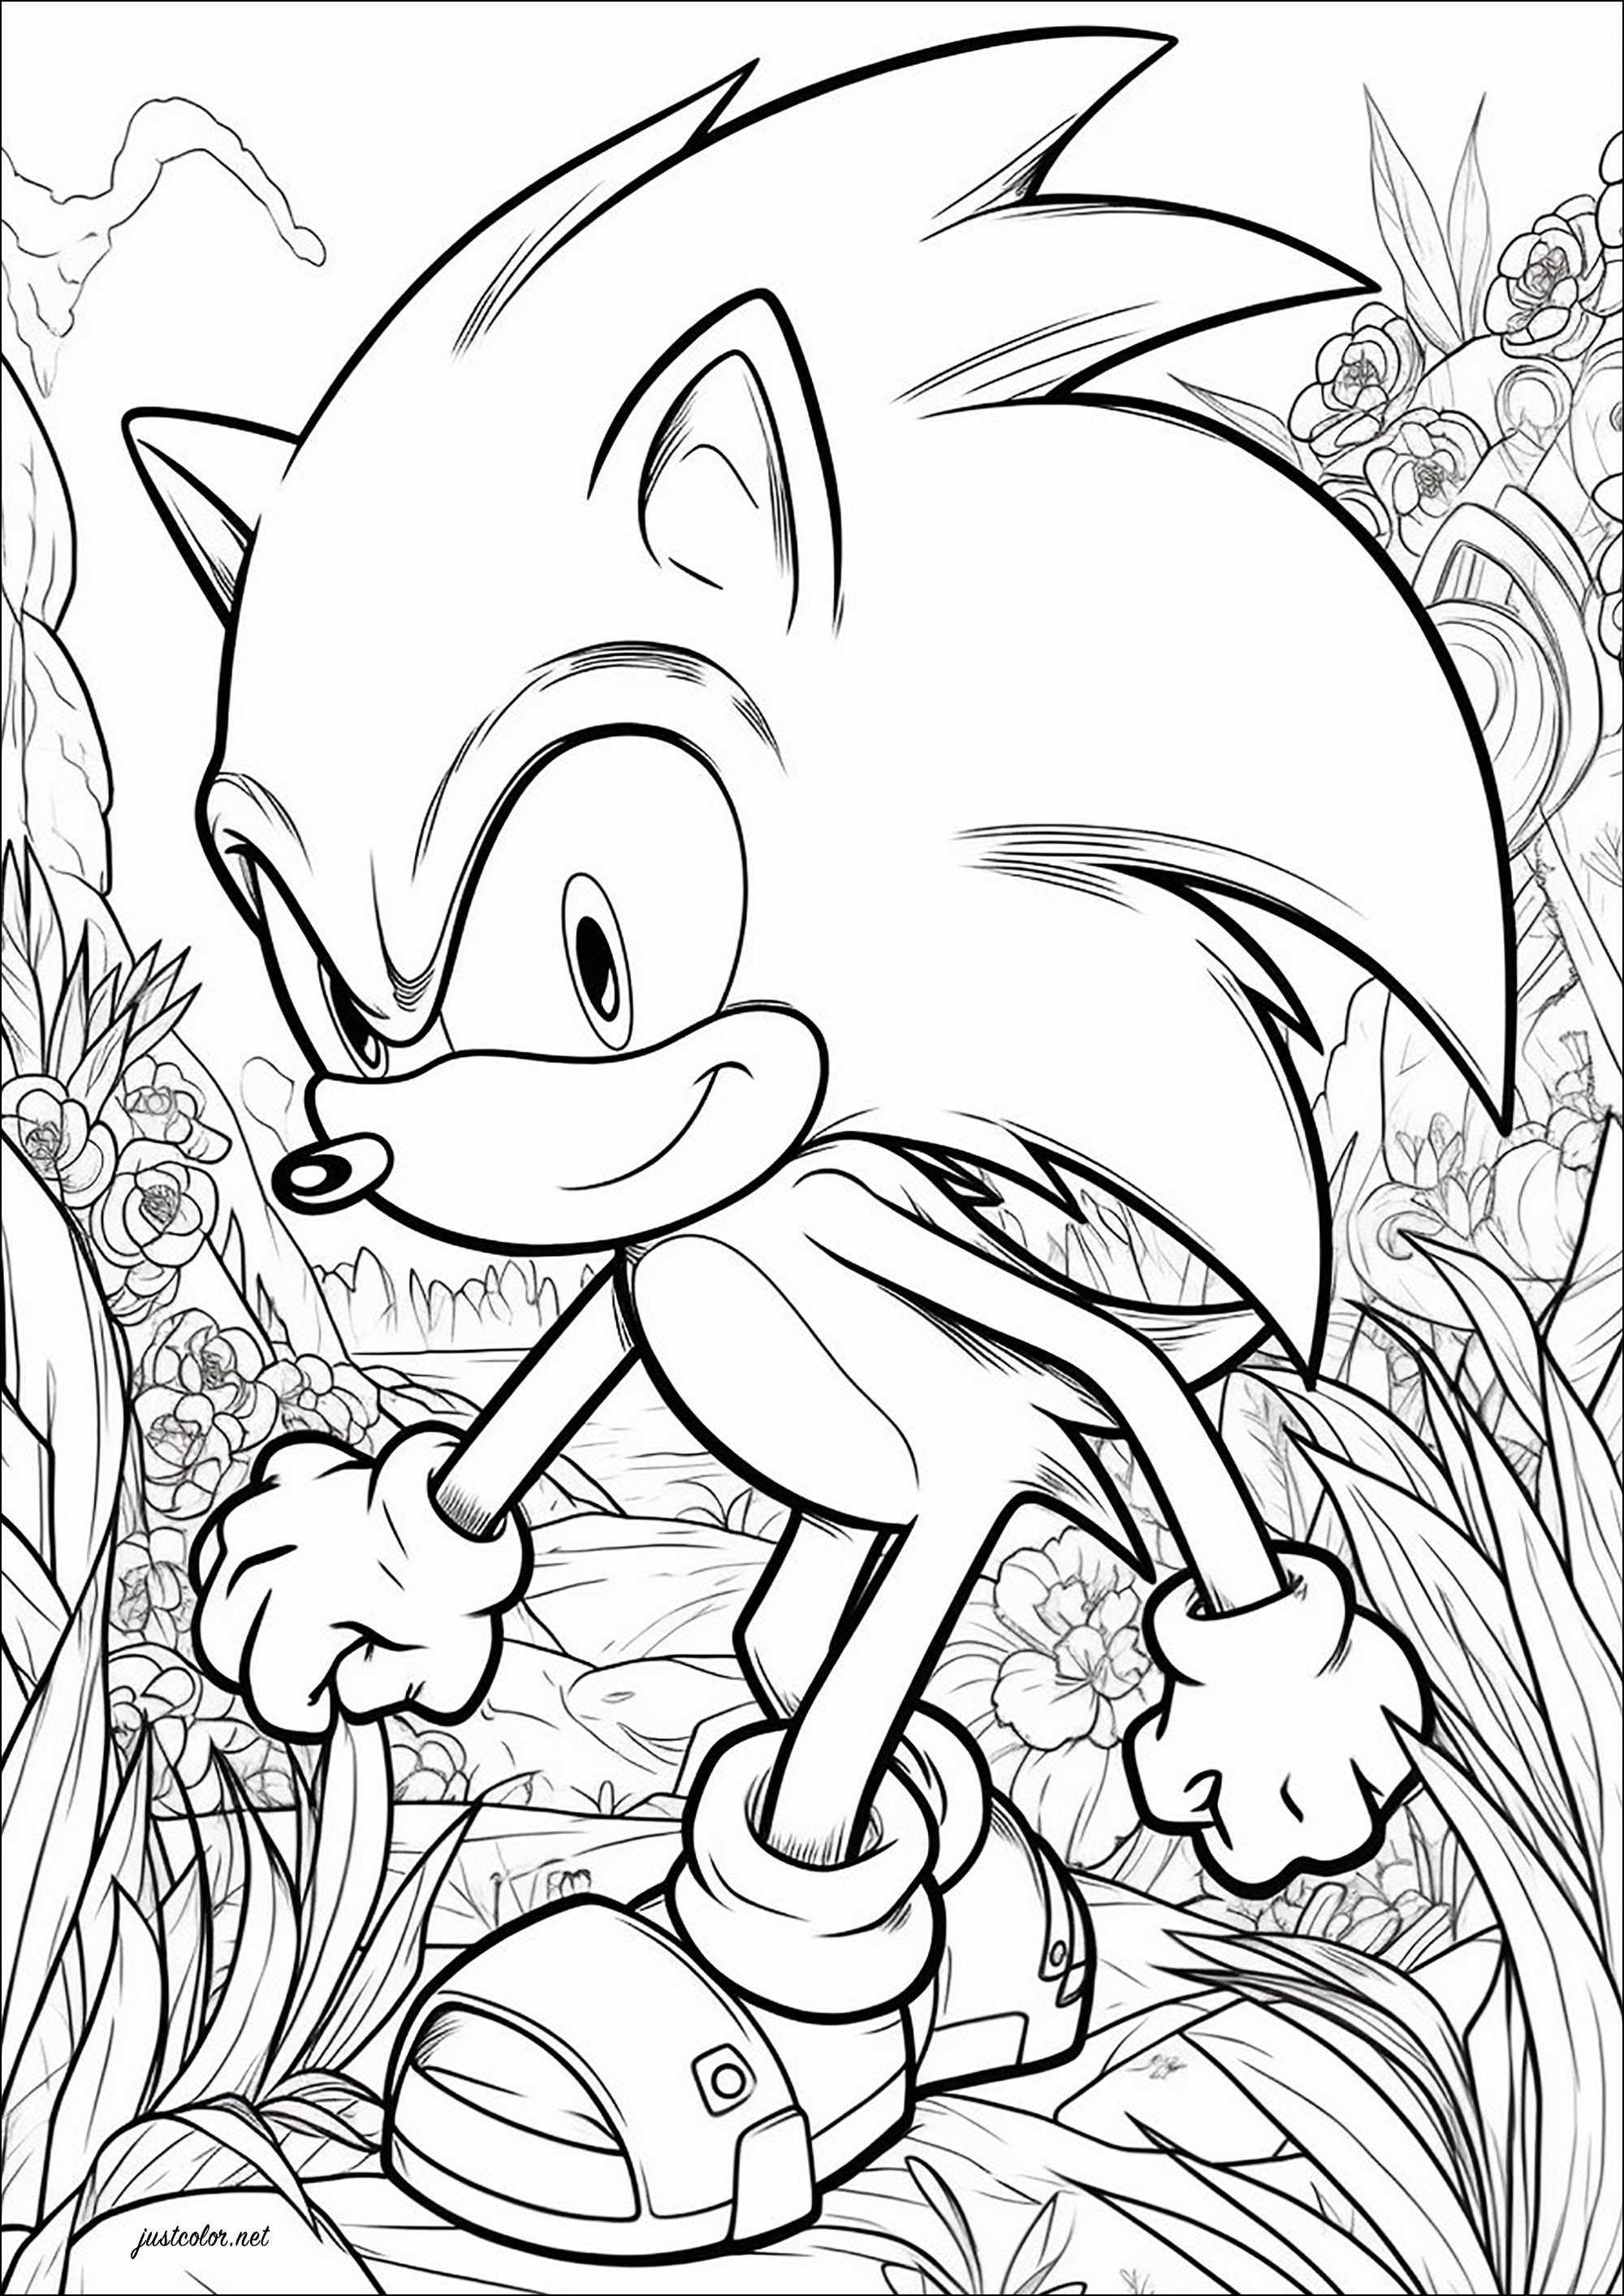 Sonic the hedgehog e um bonito fundo florido. Sonic the Hedgehog é uma série de jogos de vídeo desenvolvida pela empresa japonesa Sega desde 1991. A mascote da empresa, Sonic, é um ouriço azul antropomórfico que luta contra o principal antagonista da série, o Dr. Eggman.